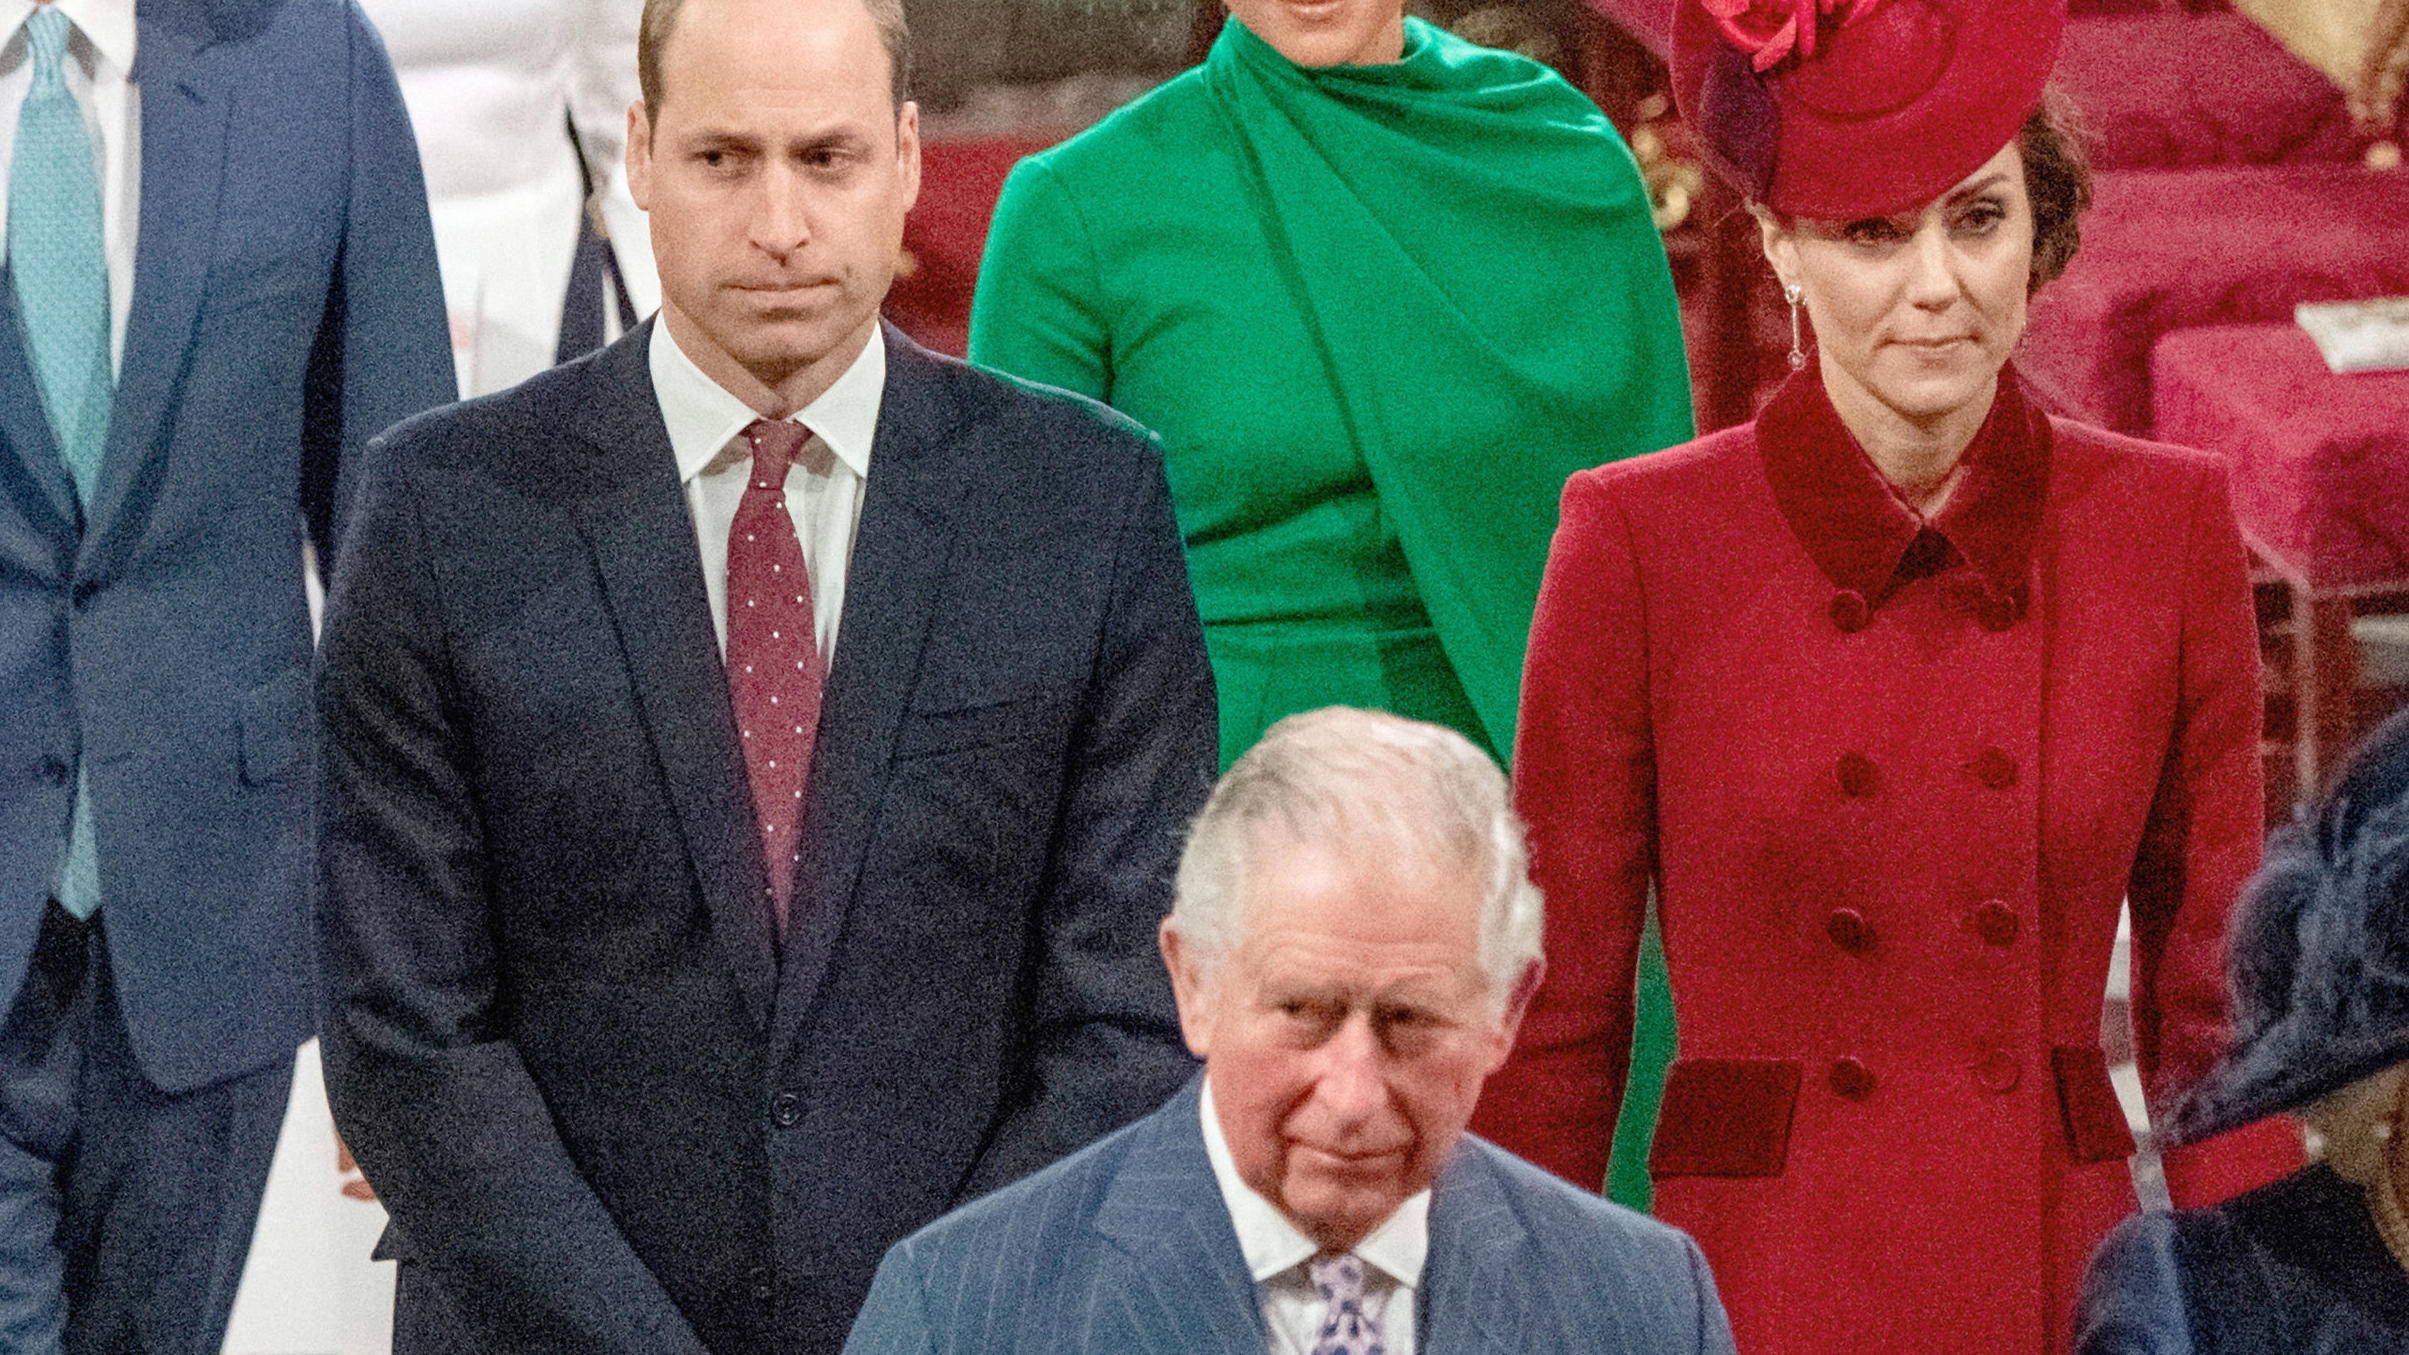 Die Beziehung zwischen Prinz William und Prinz Charles soll lange angespannt gewesen sein.